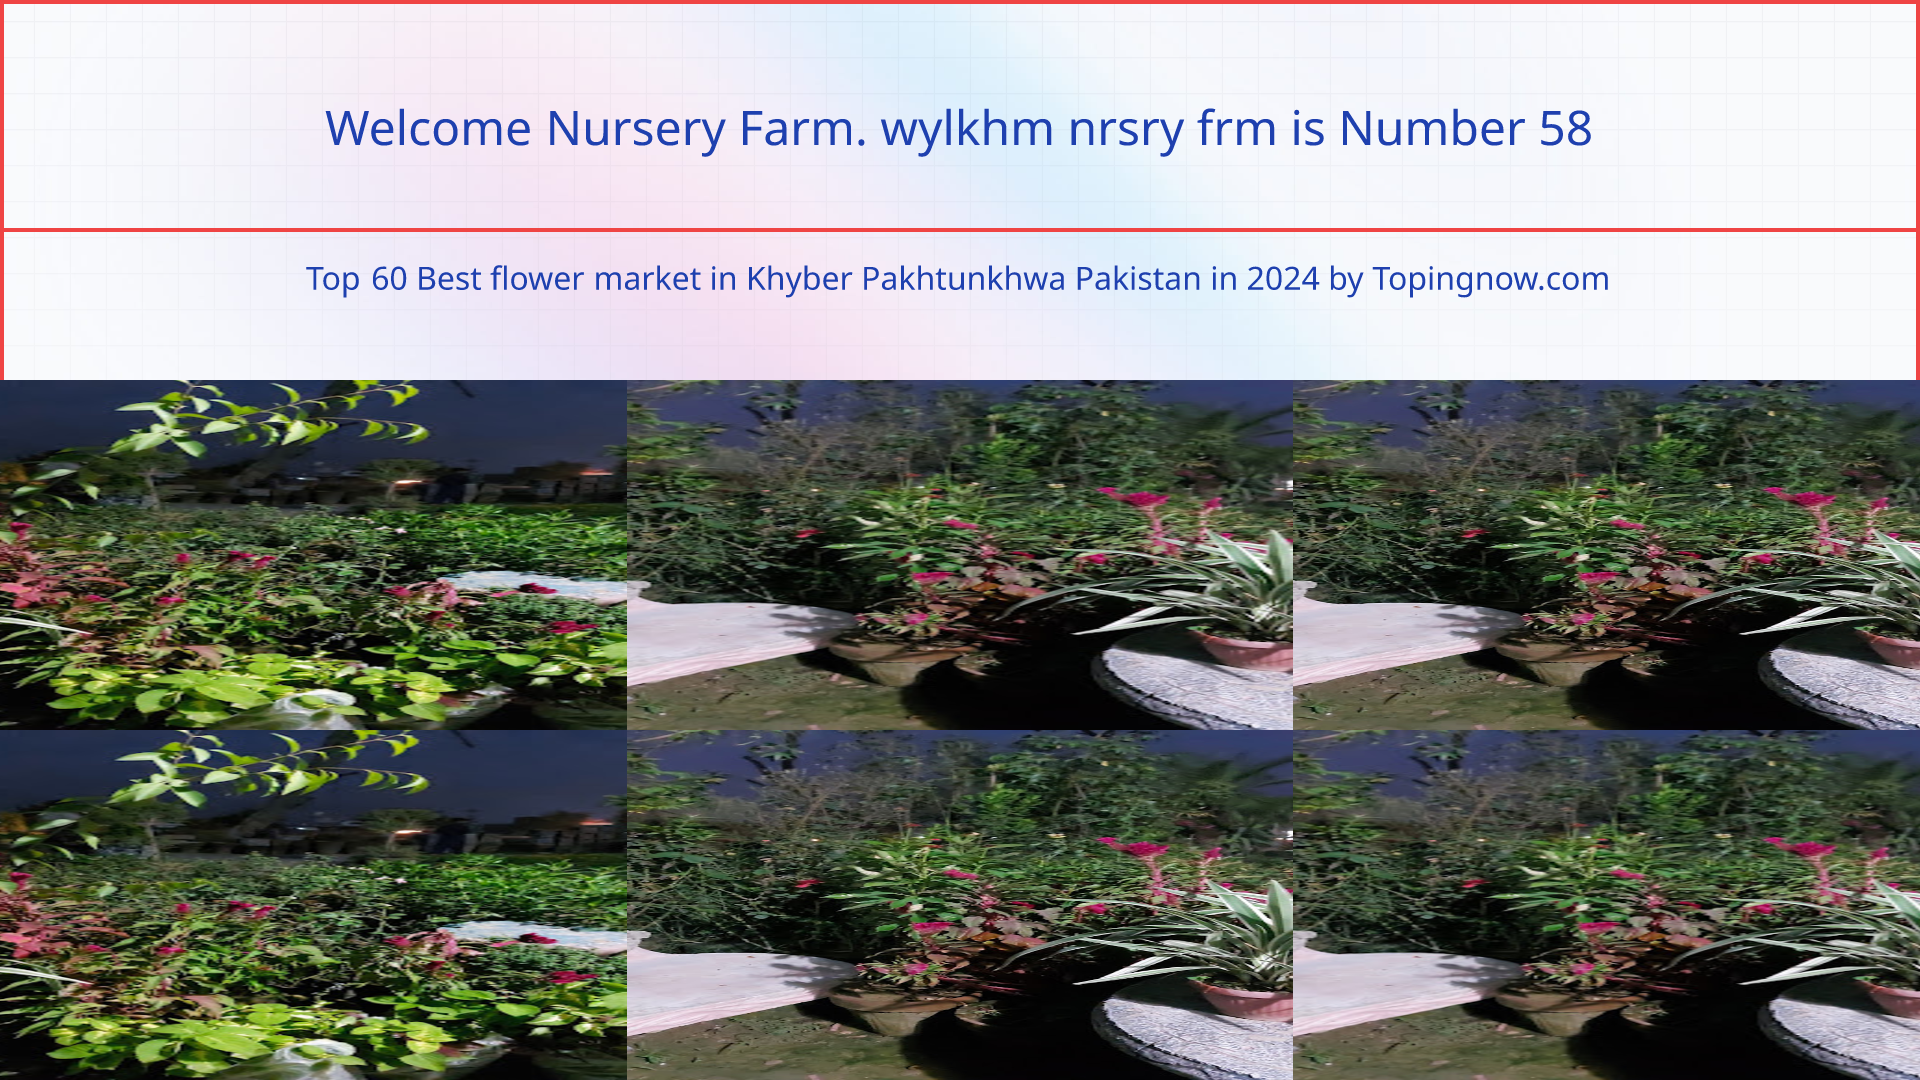 Welcome Nursery Farm. wylkhm nrsry frm: Top 60 Best flower market in Khyber Pakhtunkhwa Pakistan in 2024